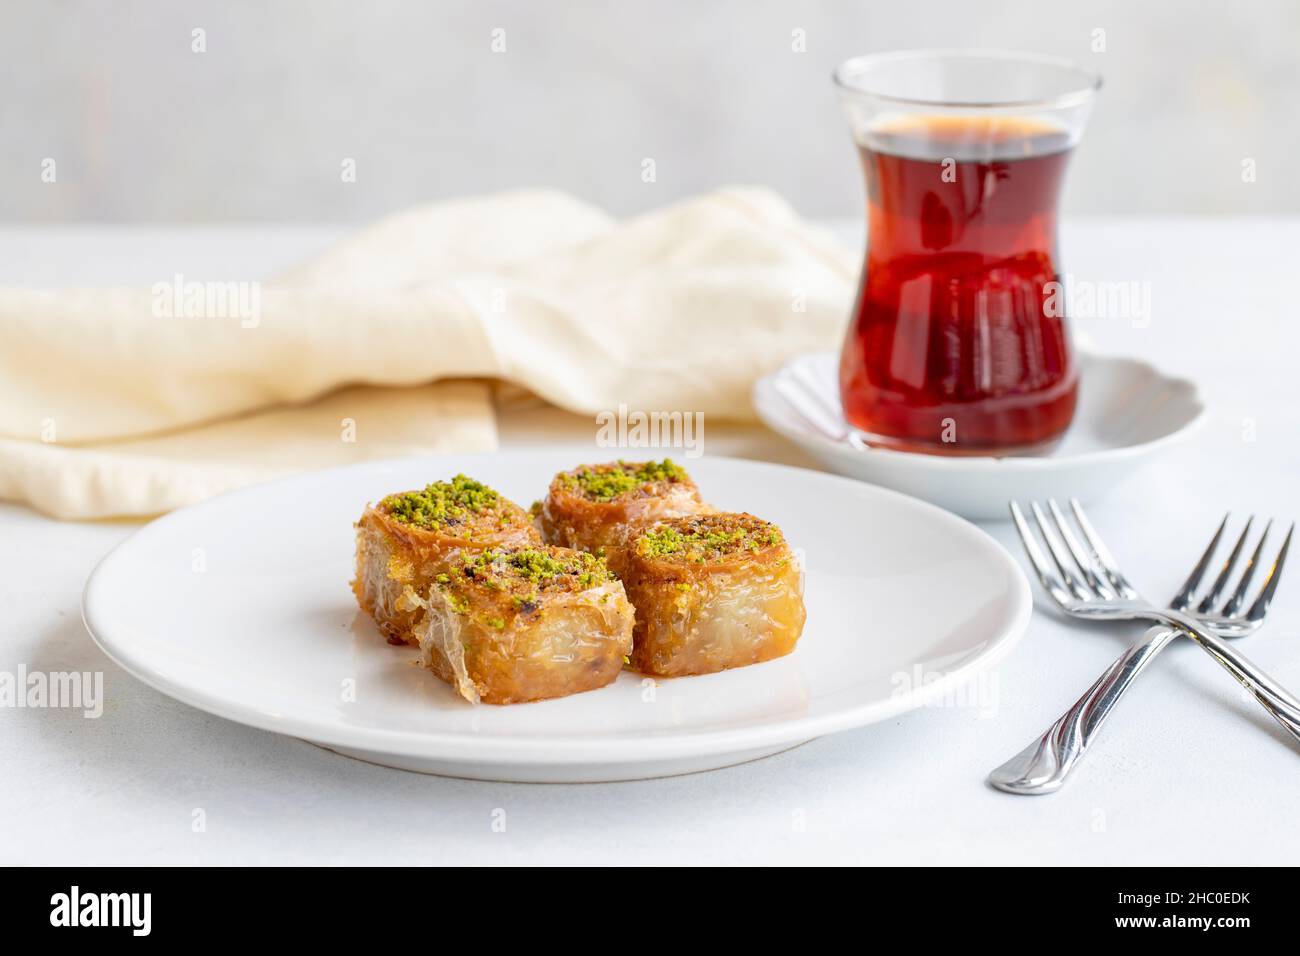 Postre de baklava pistacho sobre fondo blanco. Concepto de postre dulce turco. Plato de baklava pistacho. Sherbet panadería mediterránea dulce. Cerrar Foto de stock